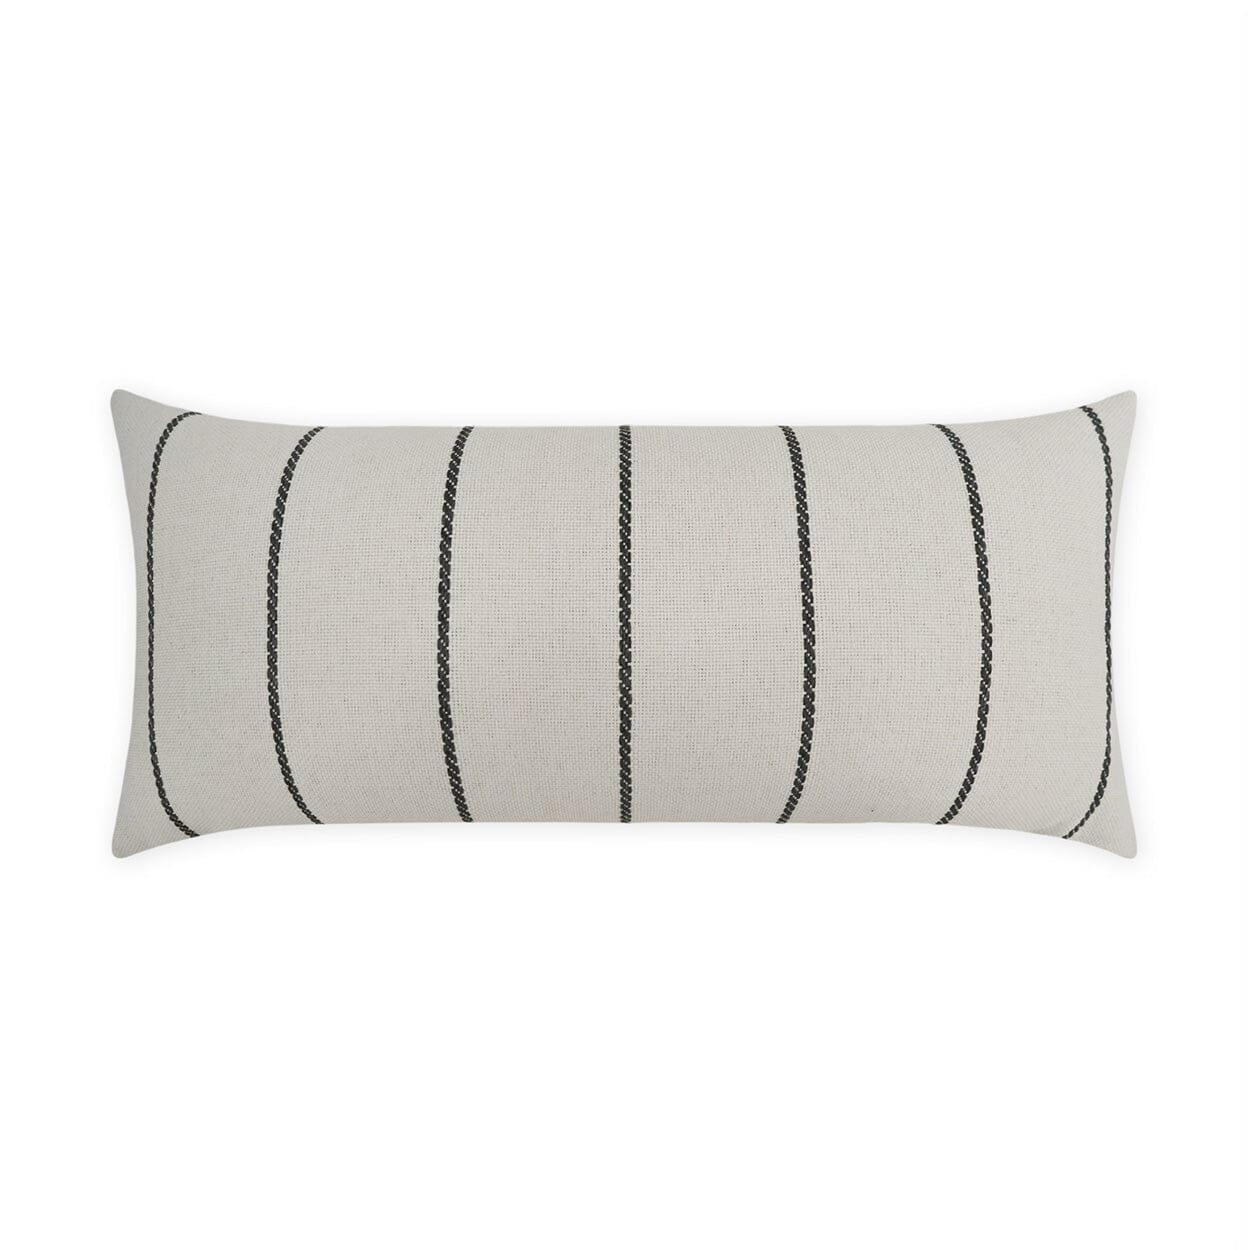 D.V. Kap 12" x 24" Outdoor Lumbar Pillow | Pencil Grey Lumbar Pillows D.V Kap Home